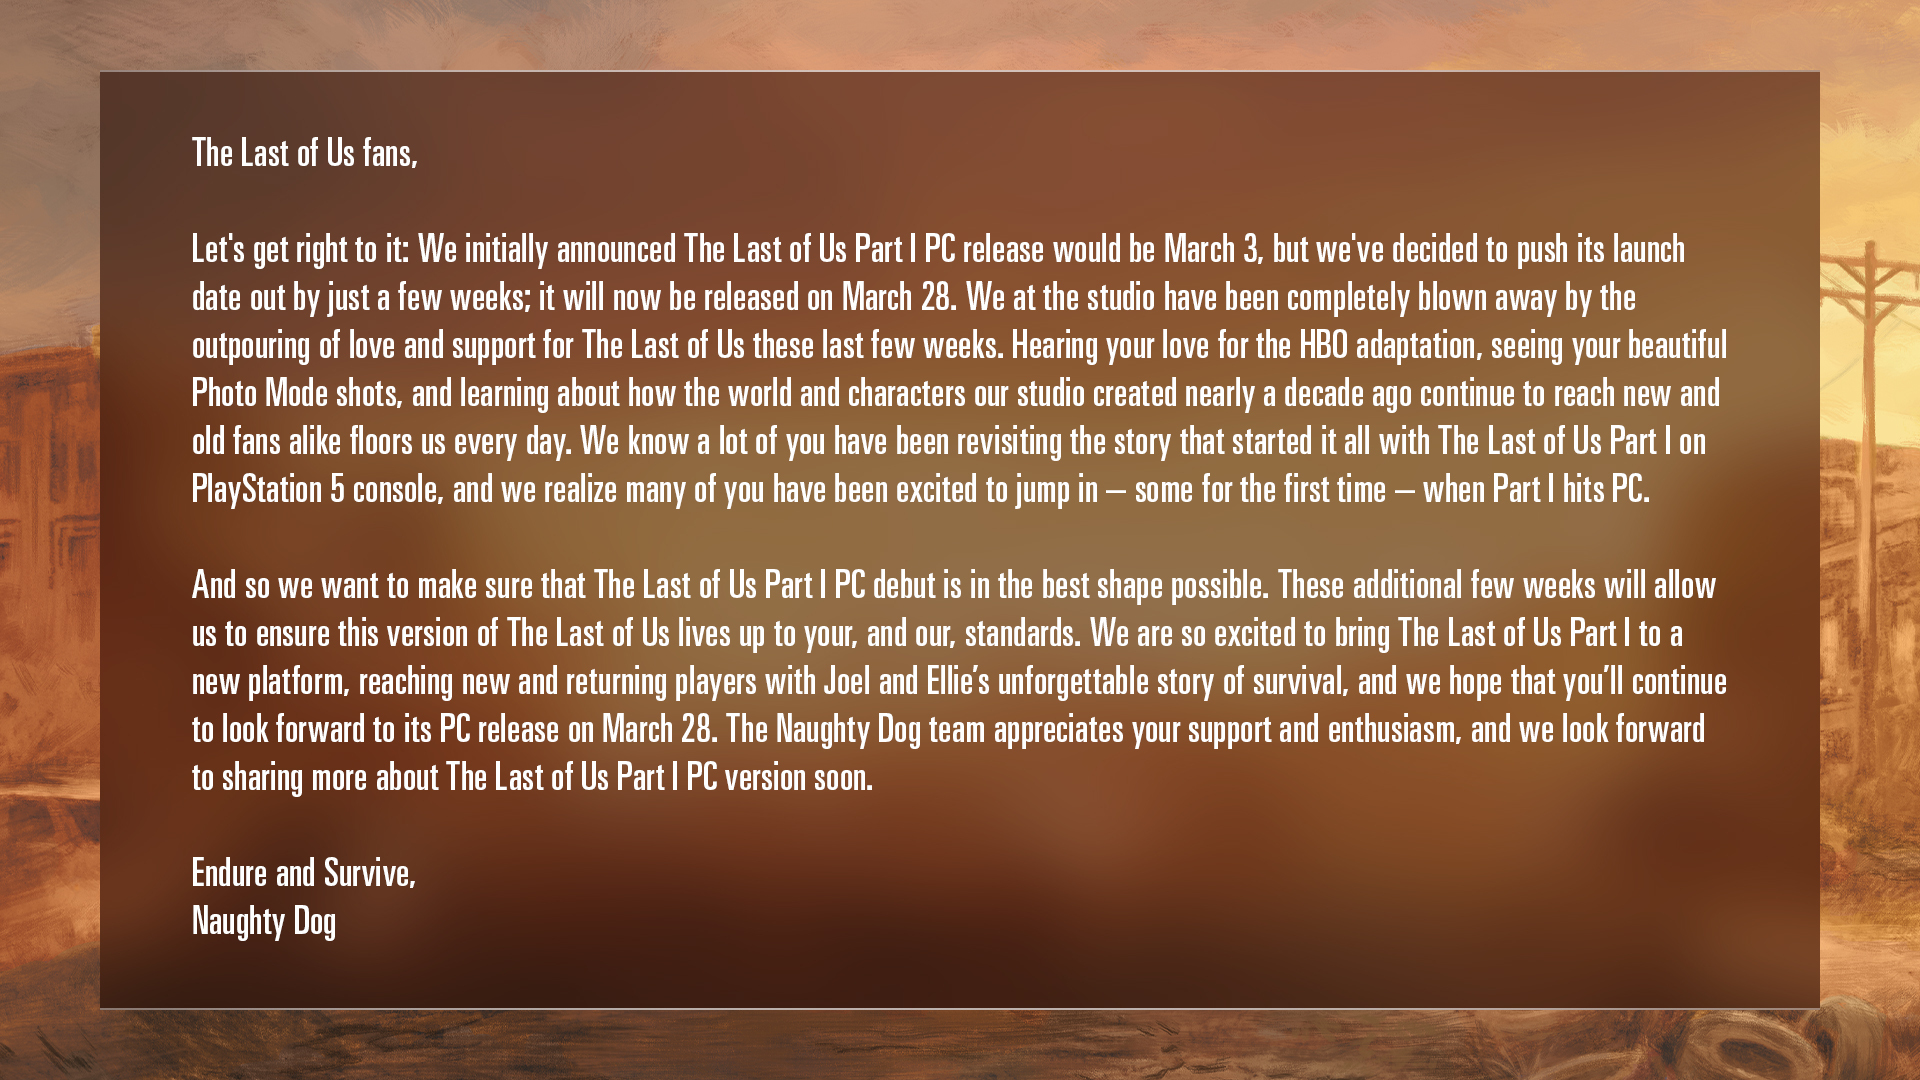 Ein Ankündigungsbild, das The Last of Us Part I PC bestätigt, wird nun am 28. März veröffentlicht.